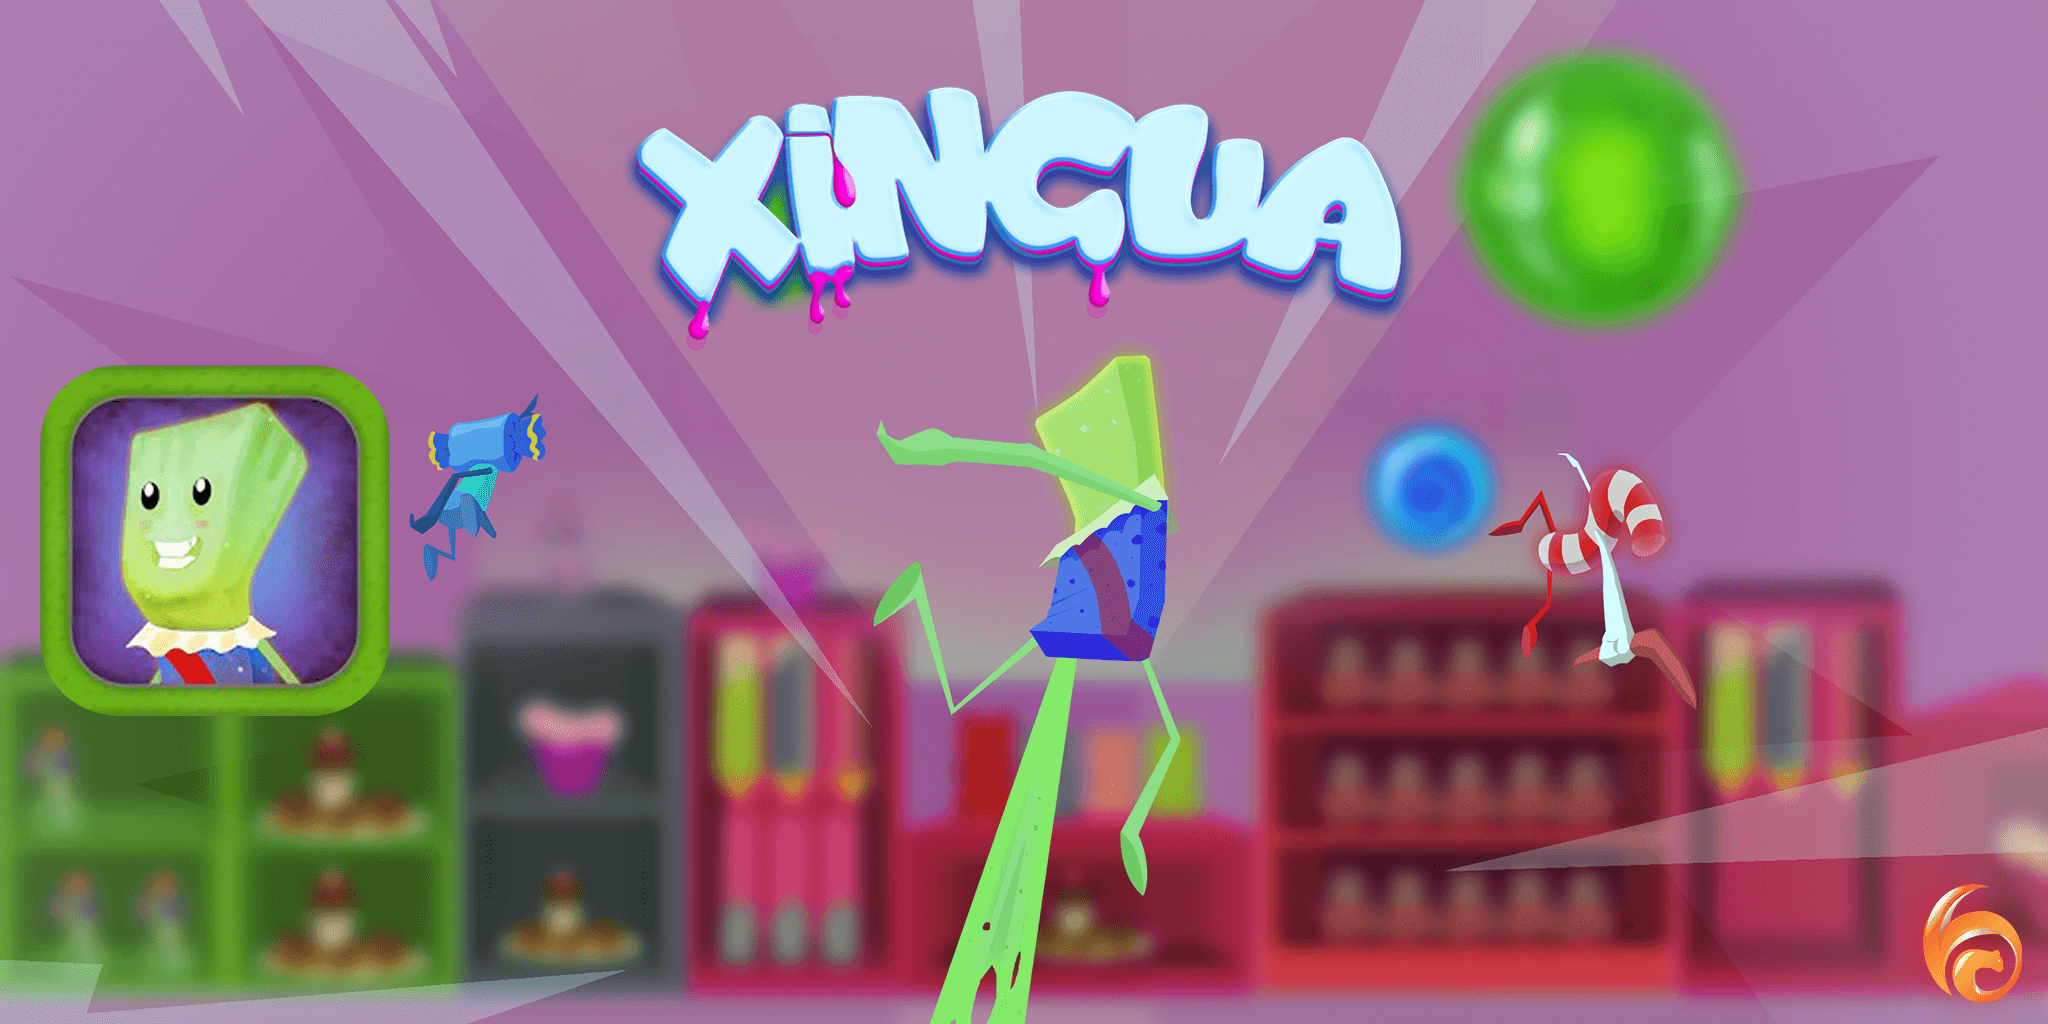 Xingua